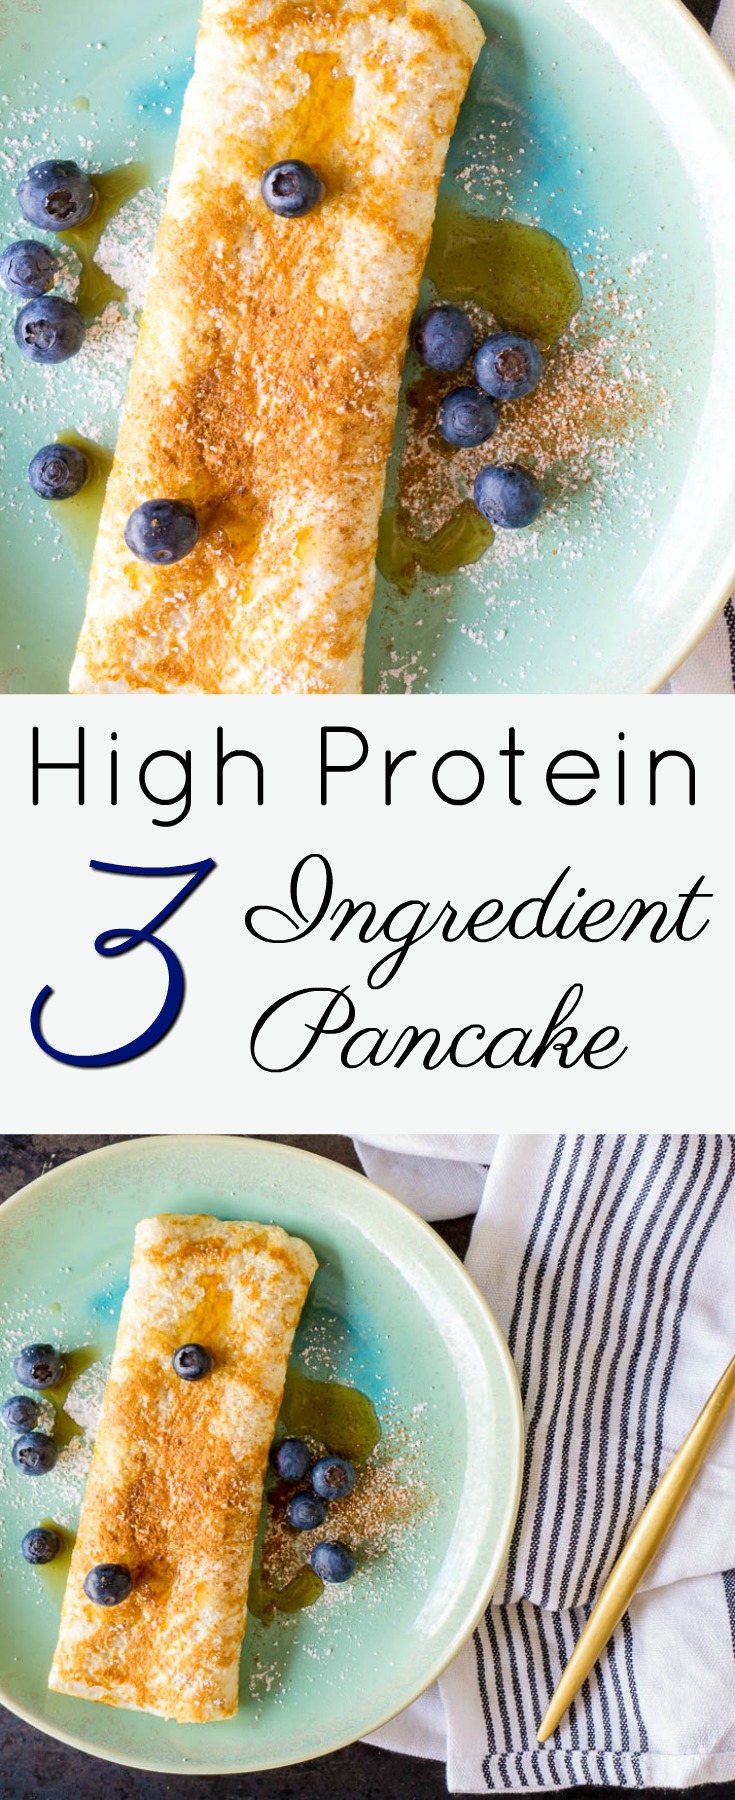 high protein 3 ingredient pancake